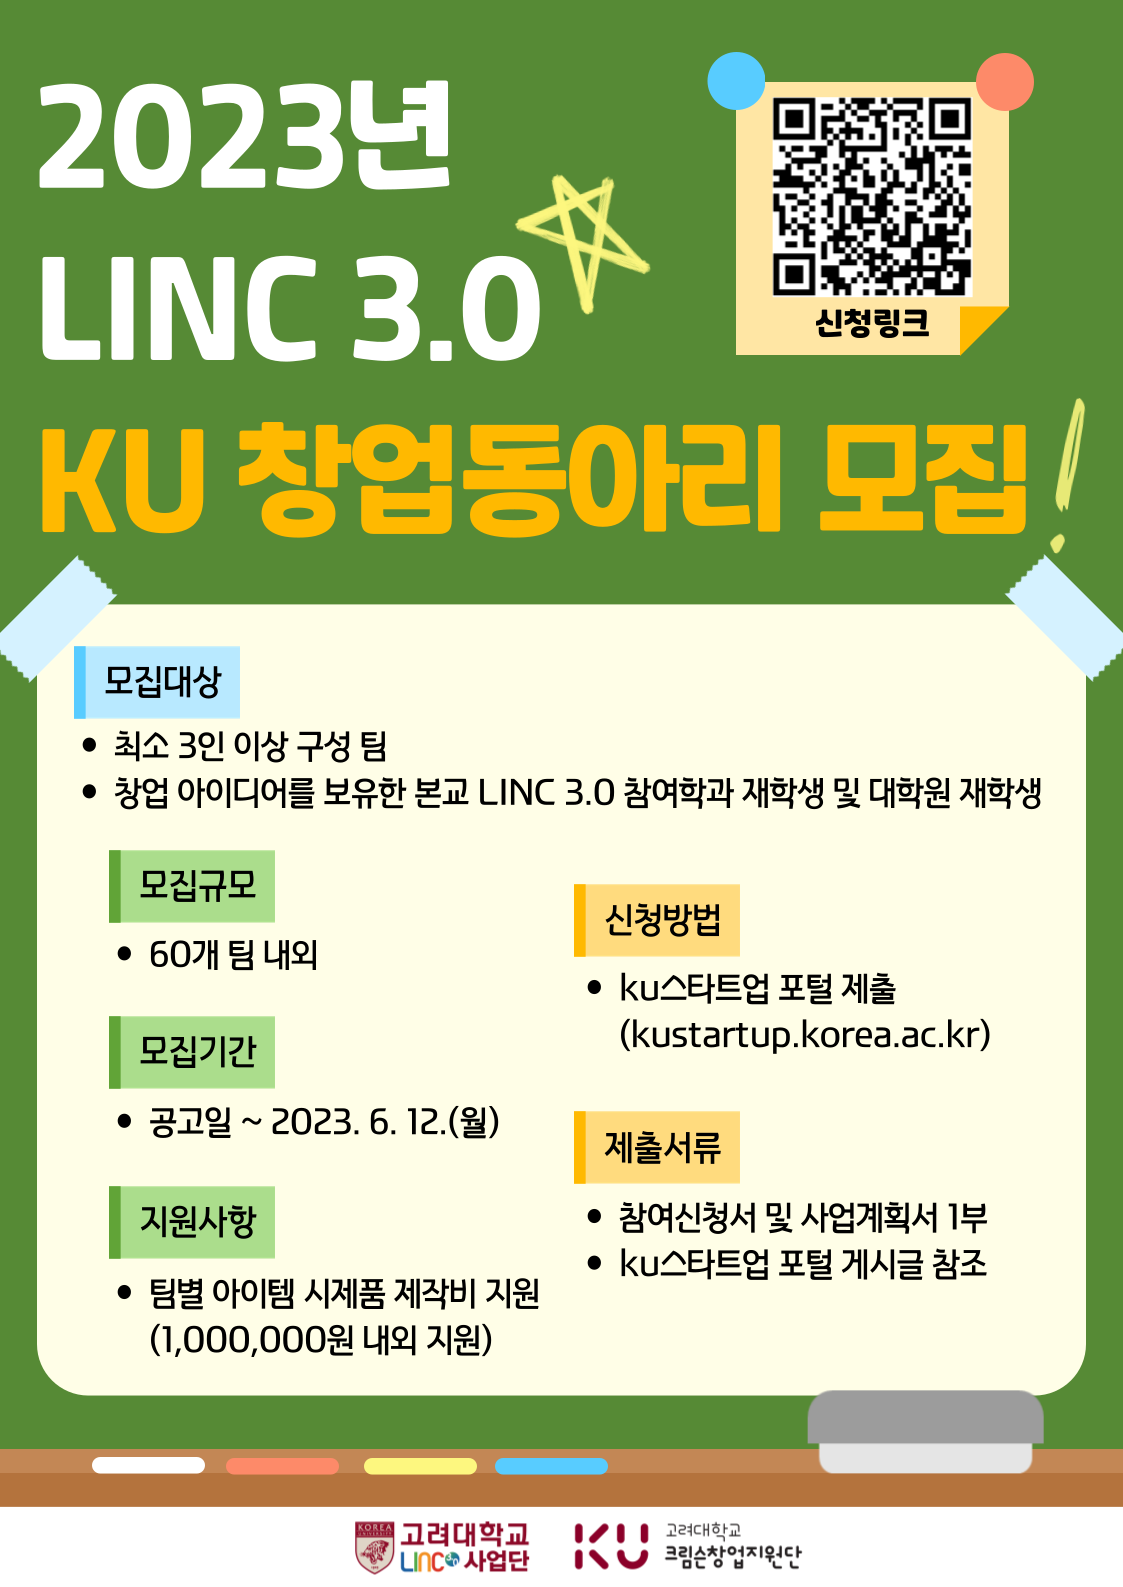 [LINC 3.0] 2023년 LINC 3.0 KU창업동아리